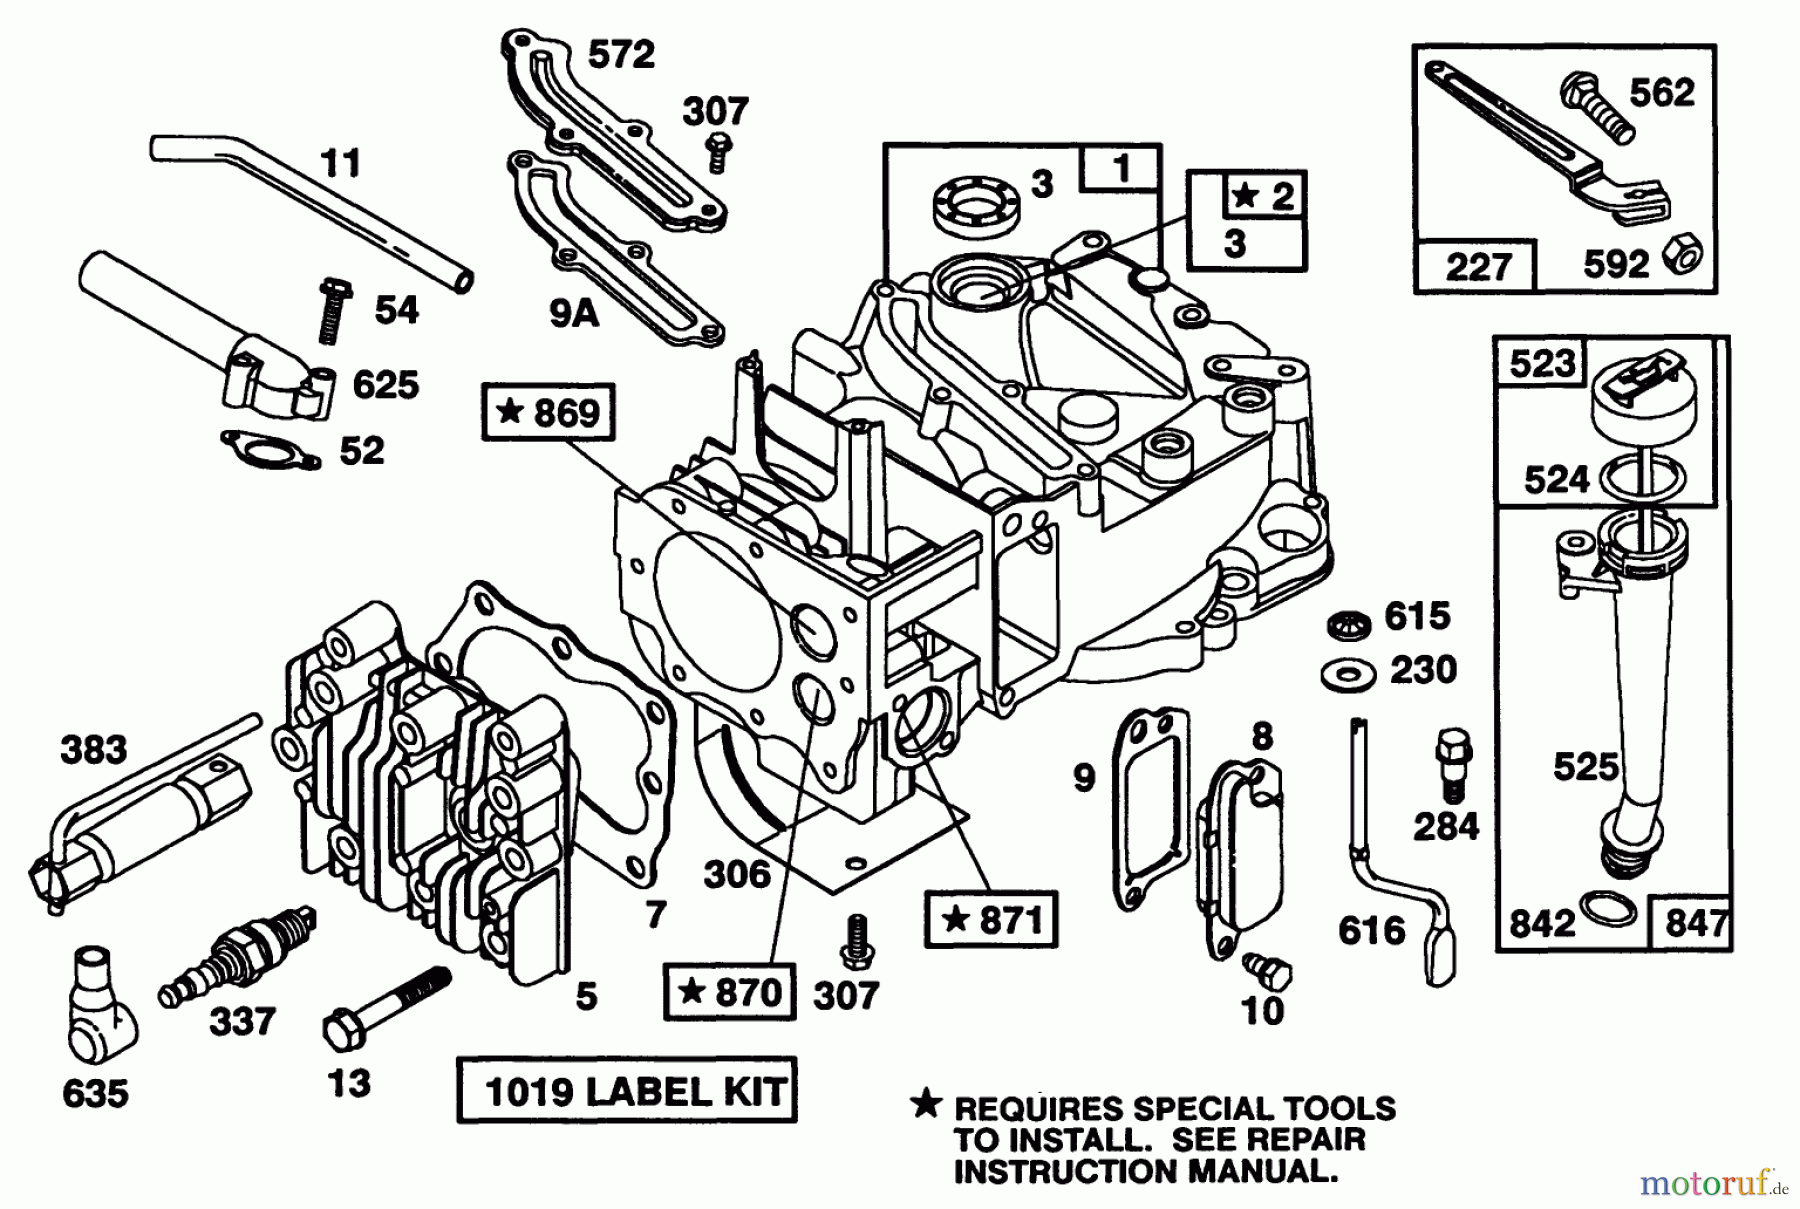  Toro Neu Mowers, Walk-Behind Seite 1 20214 - Toro Lawnmower, 1991 (1000001-1999999) ENGINE BRIGGS & STRATTON MODEL 124702-3115-01 #1